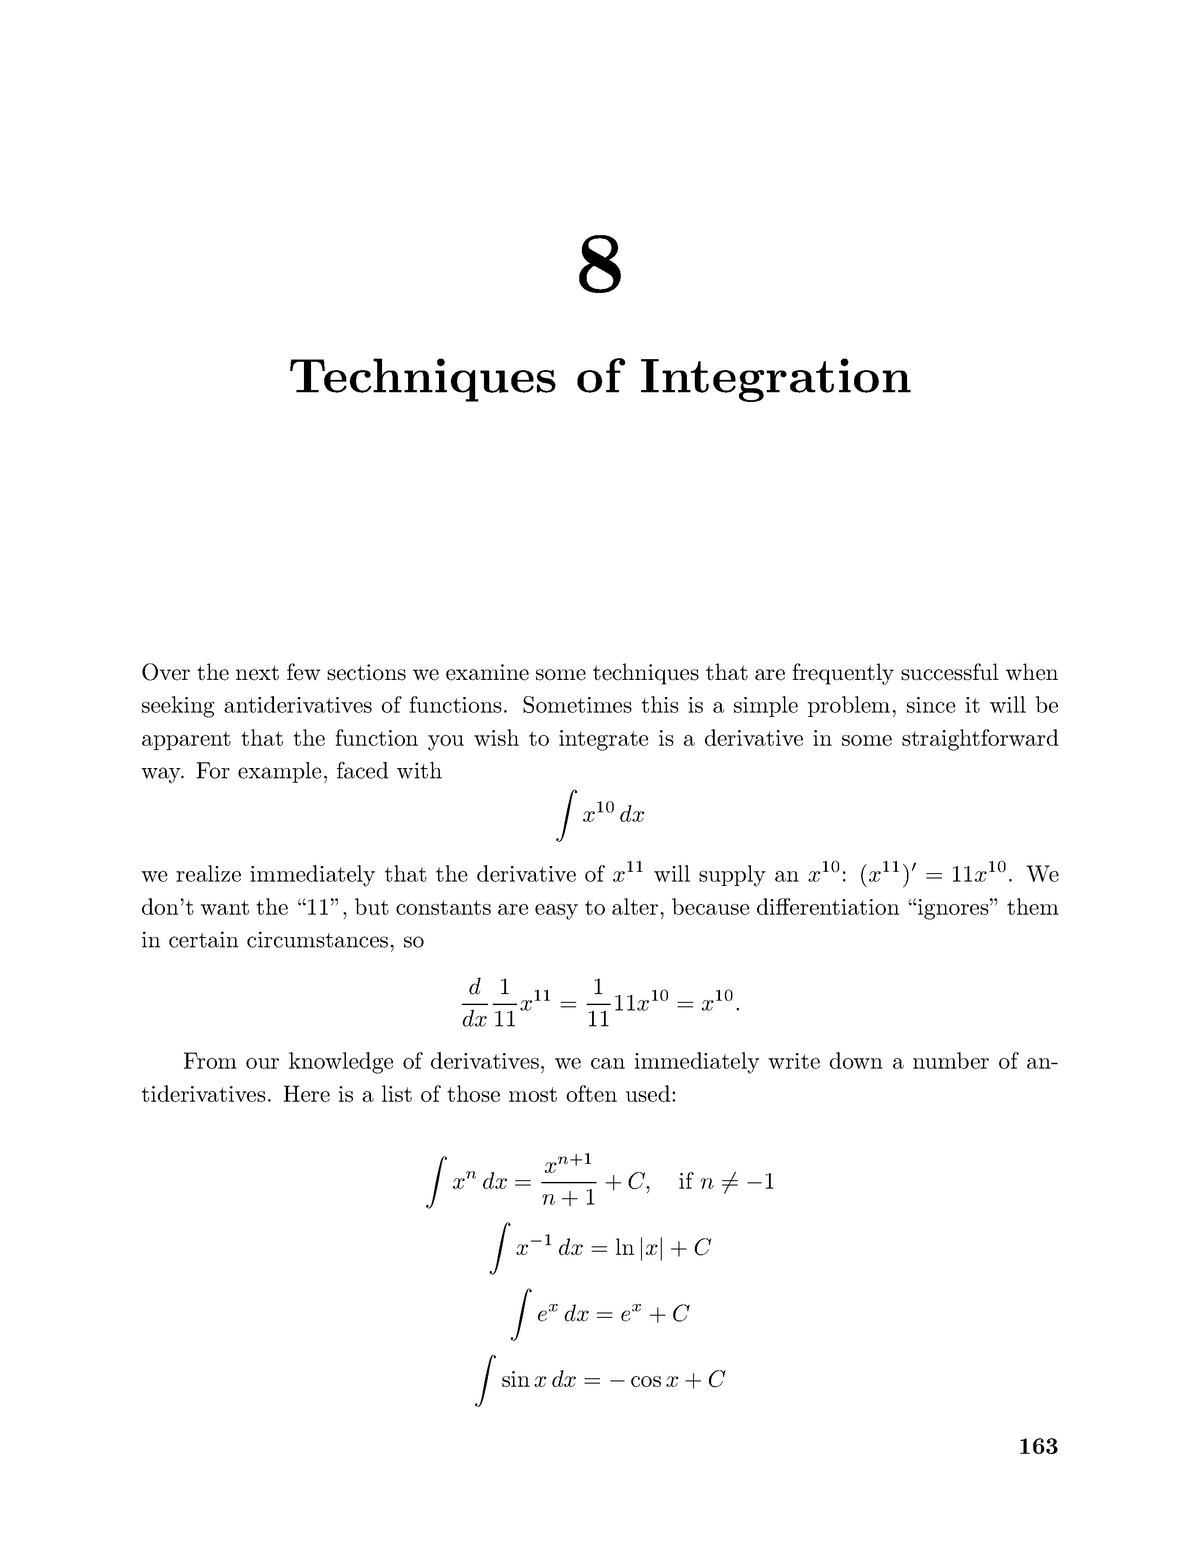 calculus-08-techniques-of-integration-8-techniques-of-integration